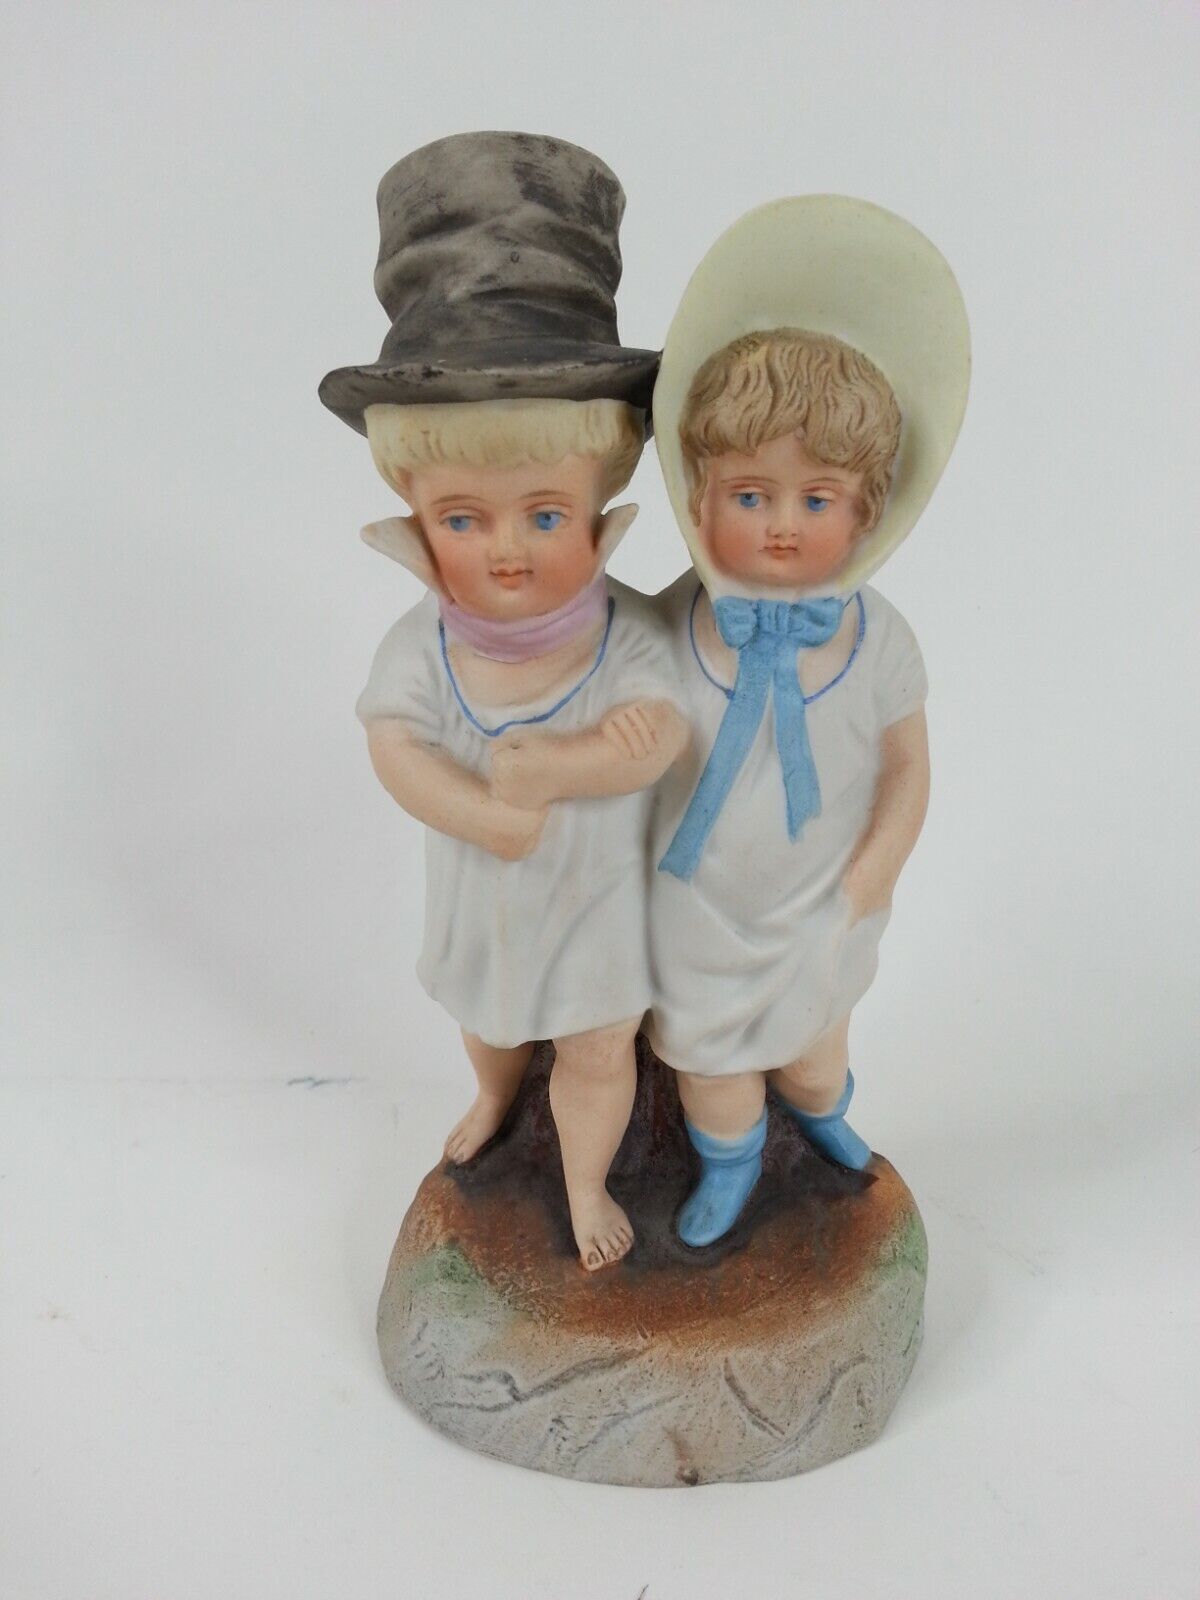 Victorian Antique Bisque Figurine Children Top Hat Boy Bonnet Girl 7 Inch Tall